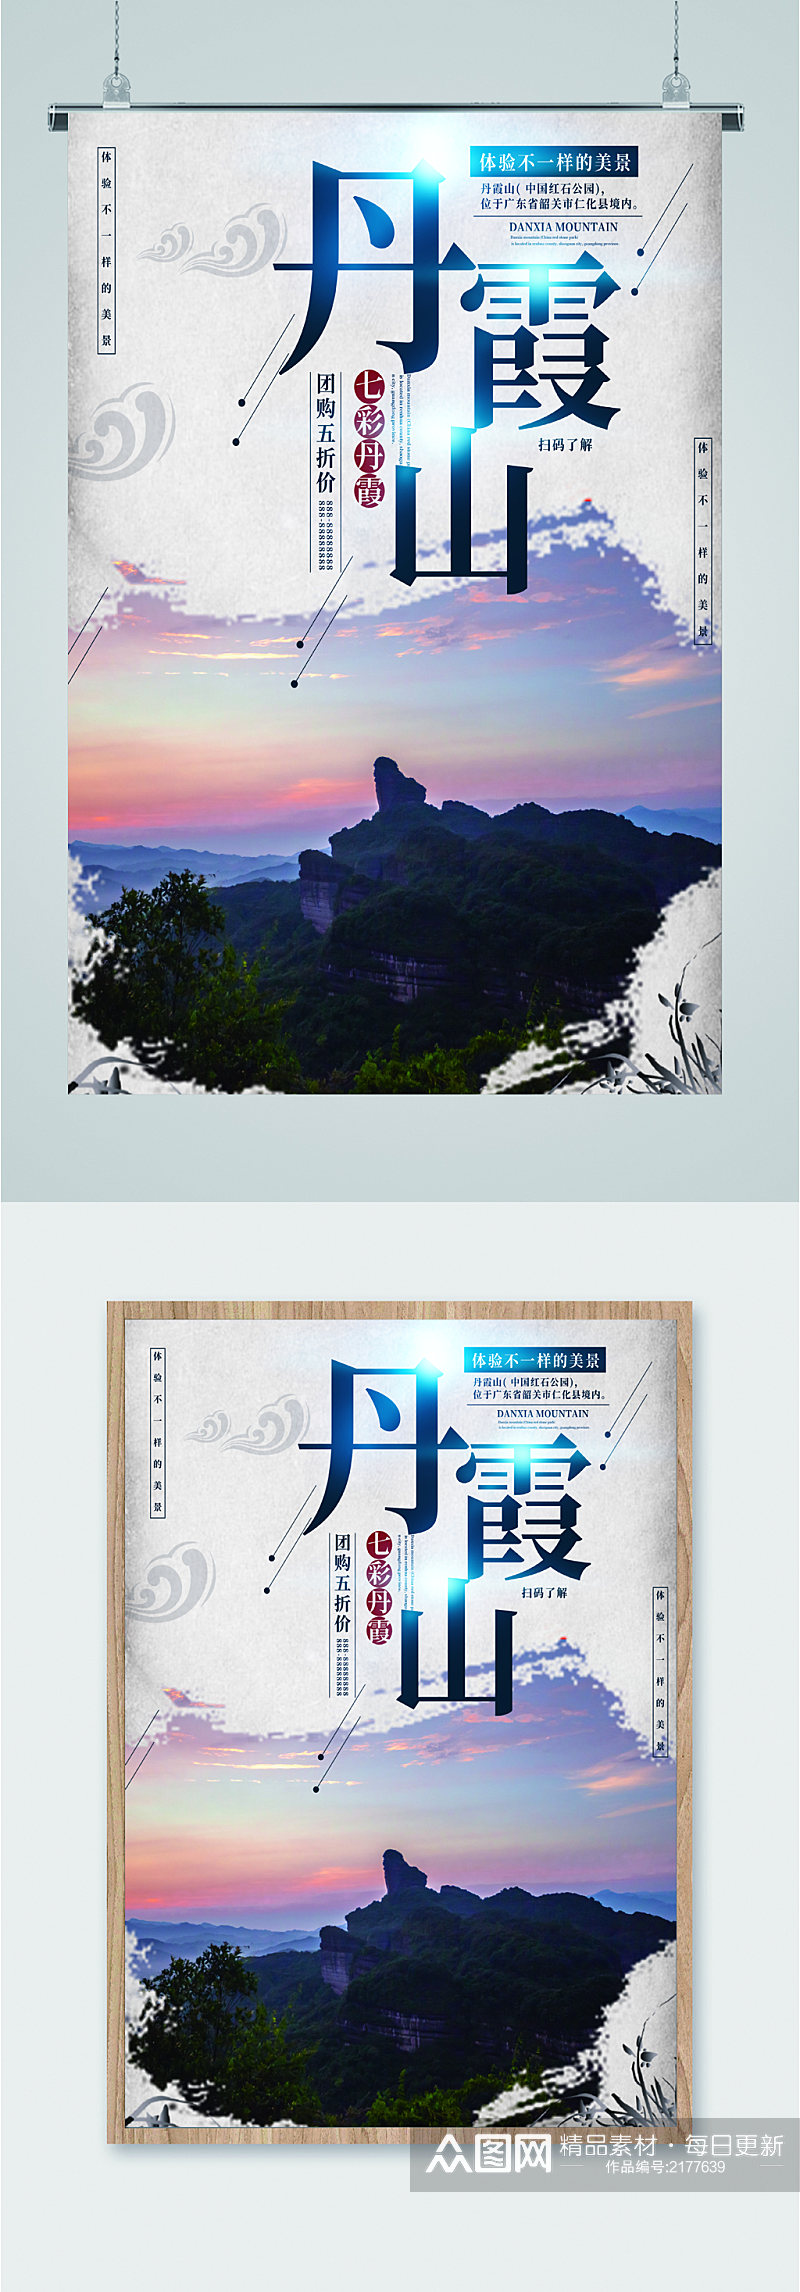 丹霞山风景旅游海报素材